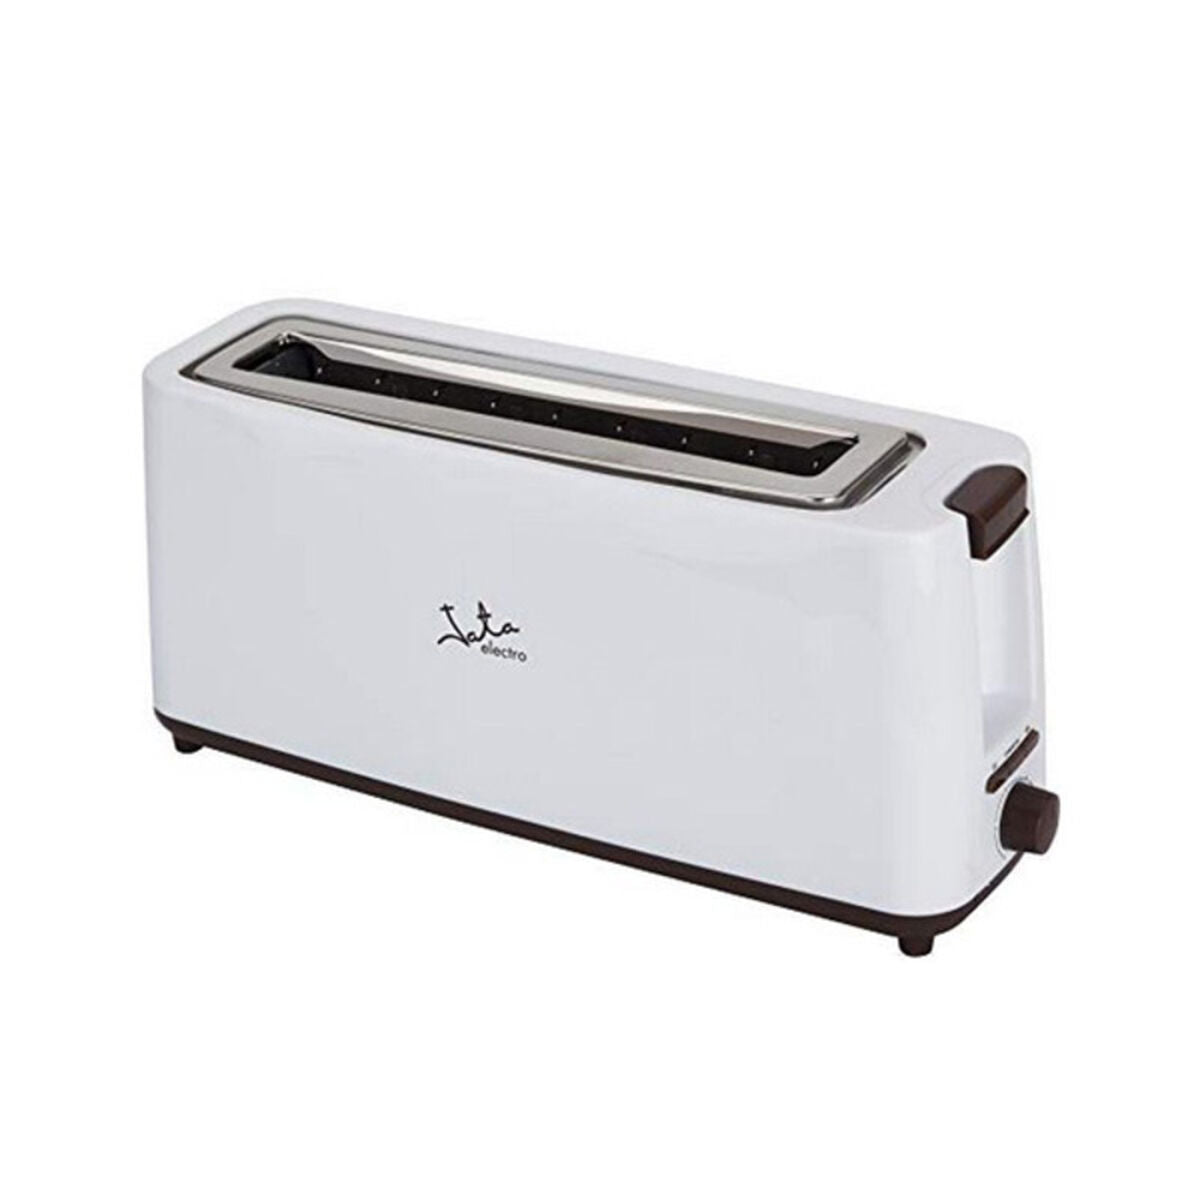 Toaster mit Abtaufunktion JATA TT579 Weiß 900 W - CA International 